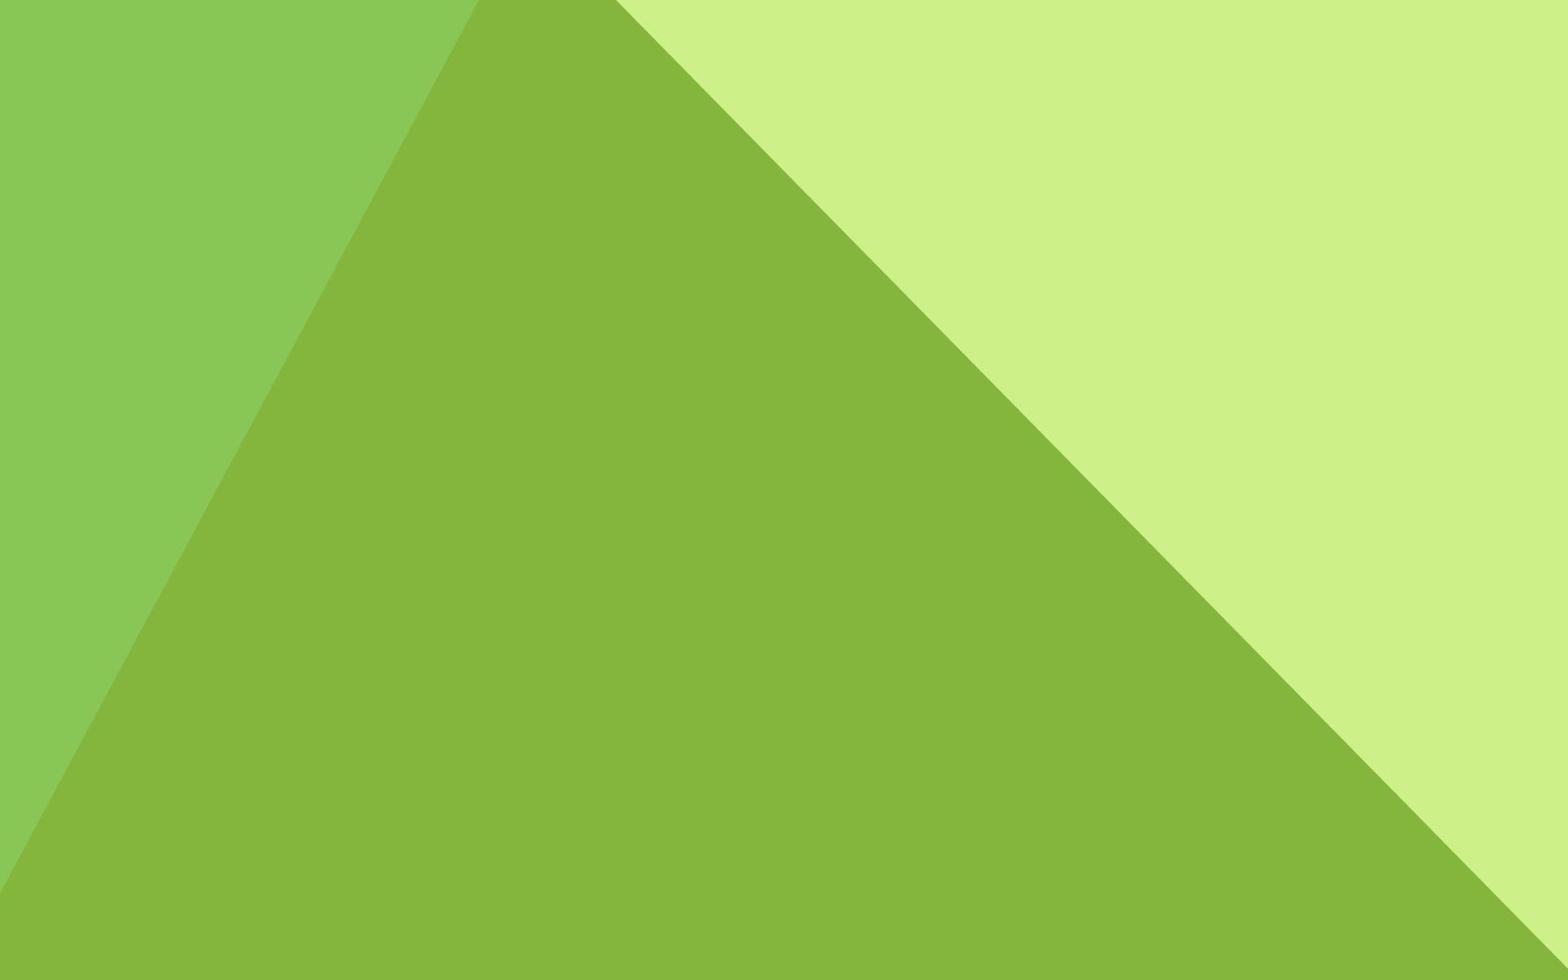 copertura a mosaico triangolo vettoriale verde chiaro.